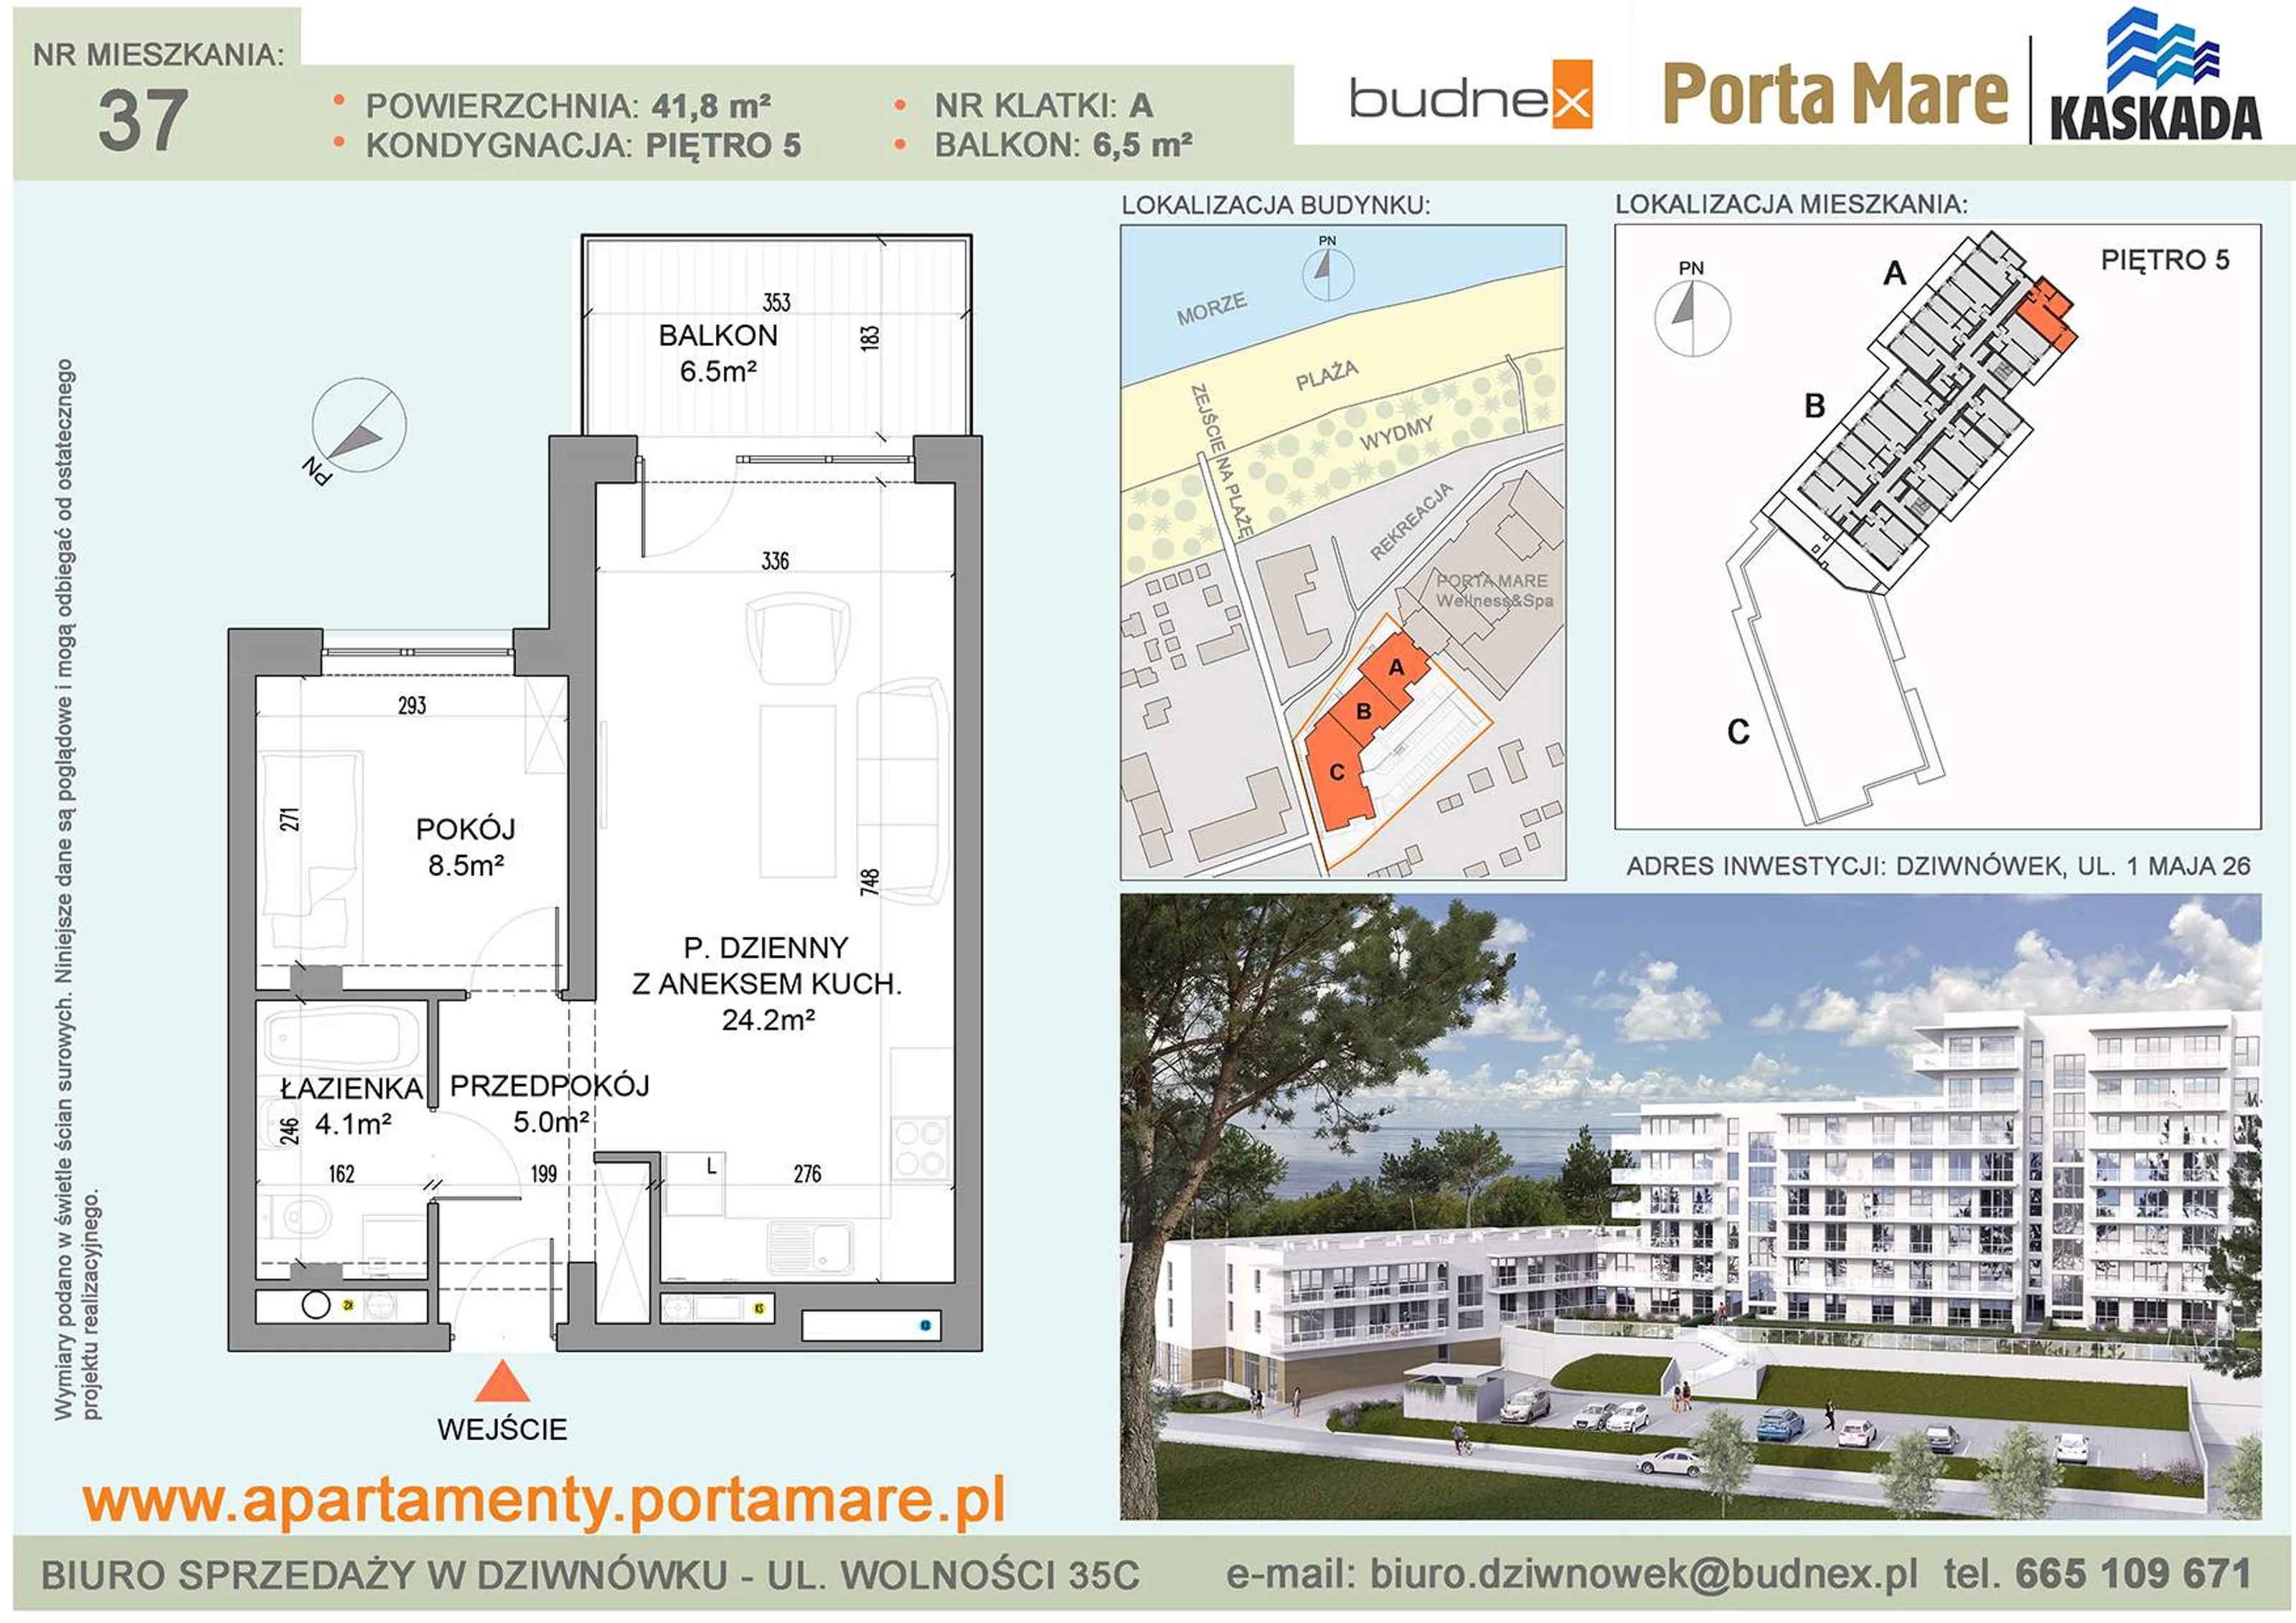 Mieszkanie 41,80 m², piętro 5, oferta nr A/M37, Porta Mare Kaskada, Dziwnówek, ul. 1 Maja 26